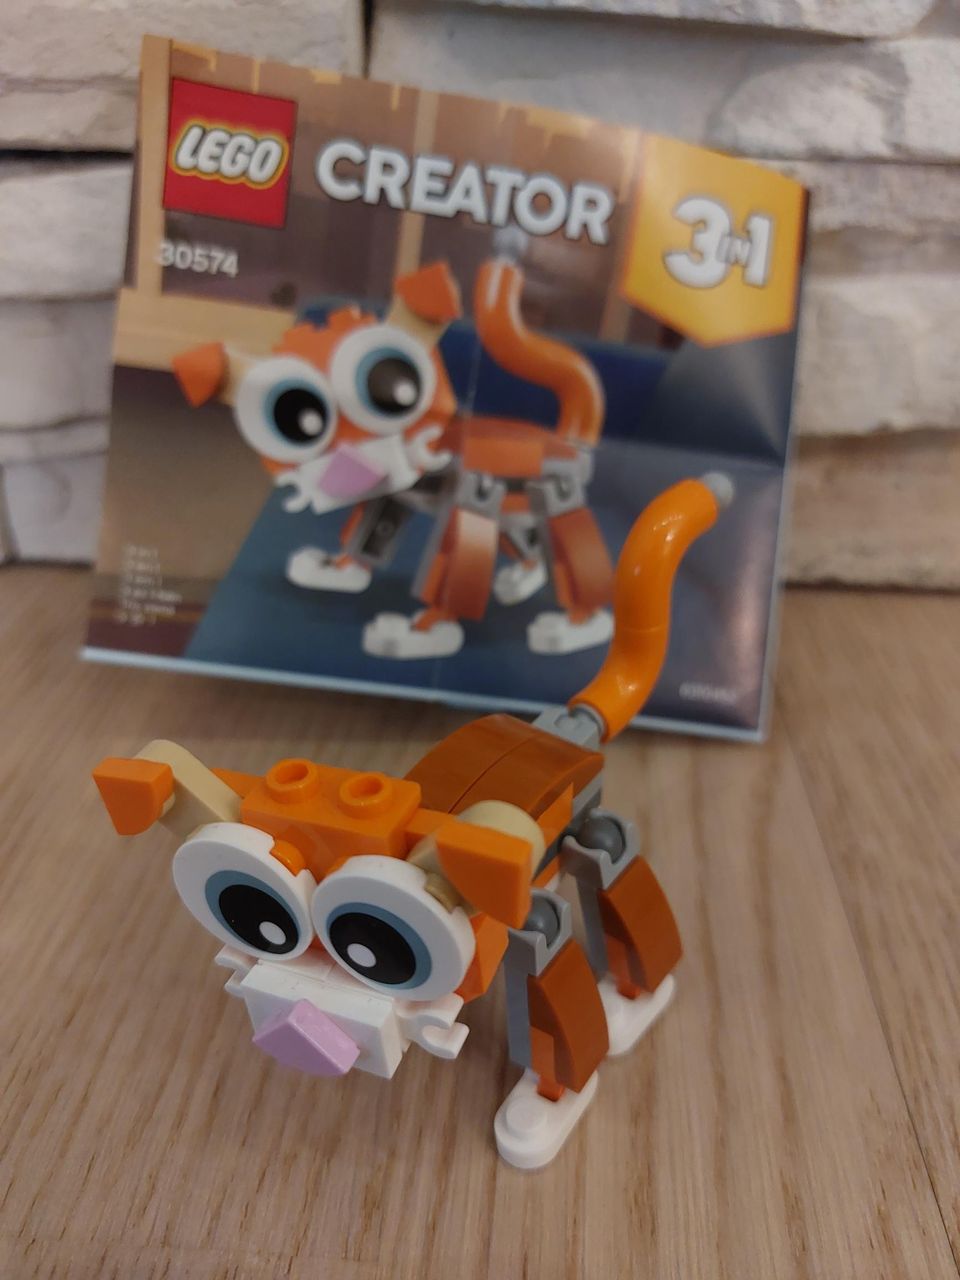 30574 Lego Creator 3 in 1